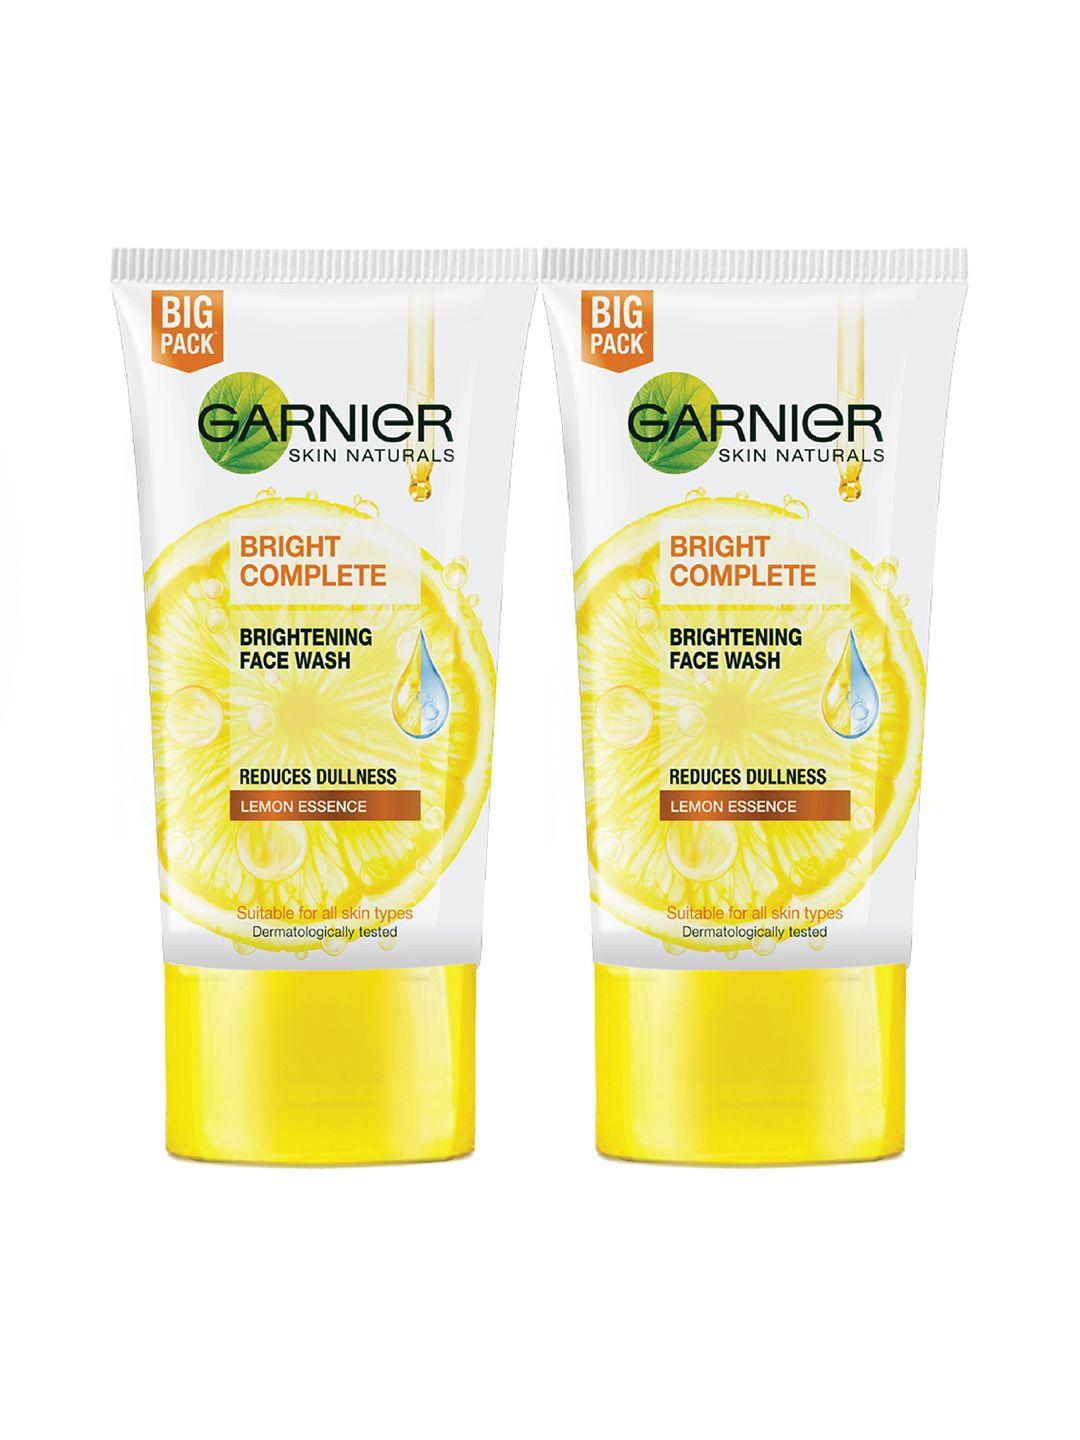 garnier set of 2 bright complete brightening facewash - 150 g each